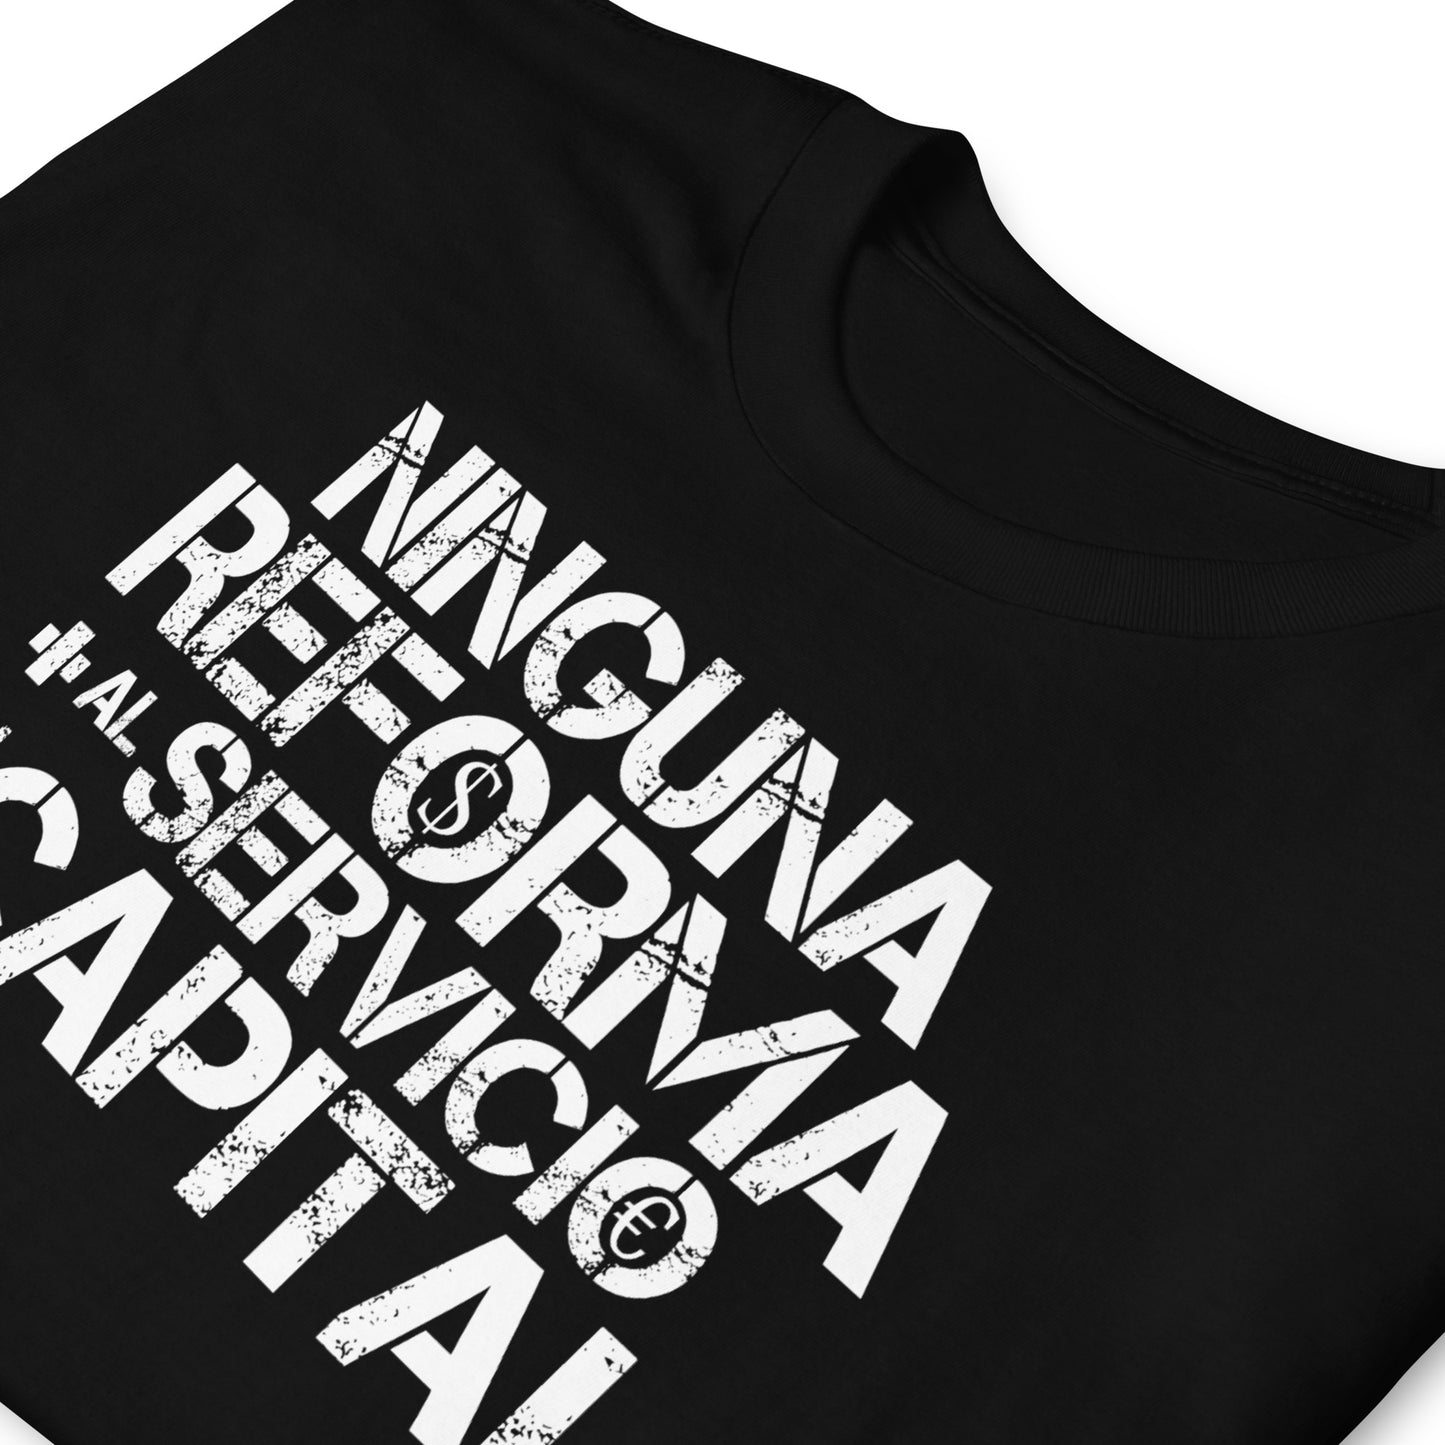 Camiseta Ninguna Reforma más al Servicio del Capital